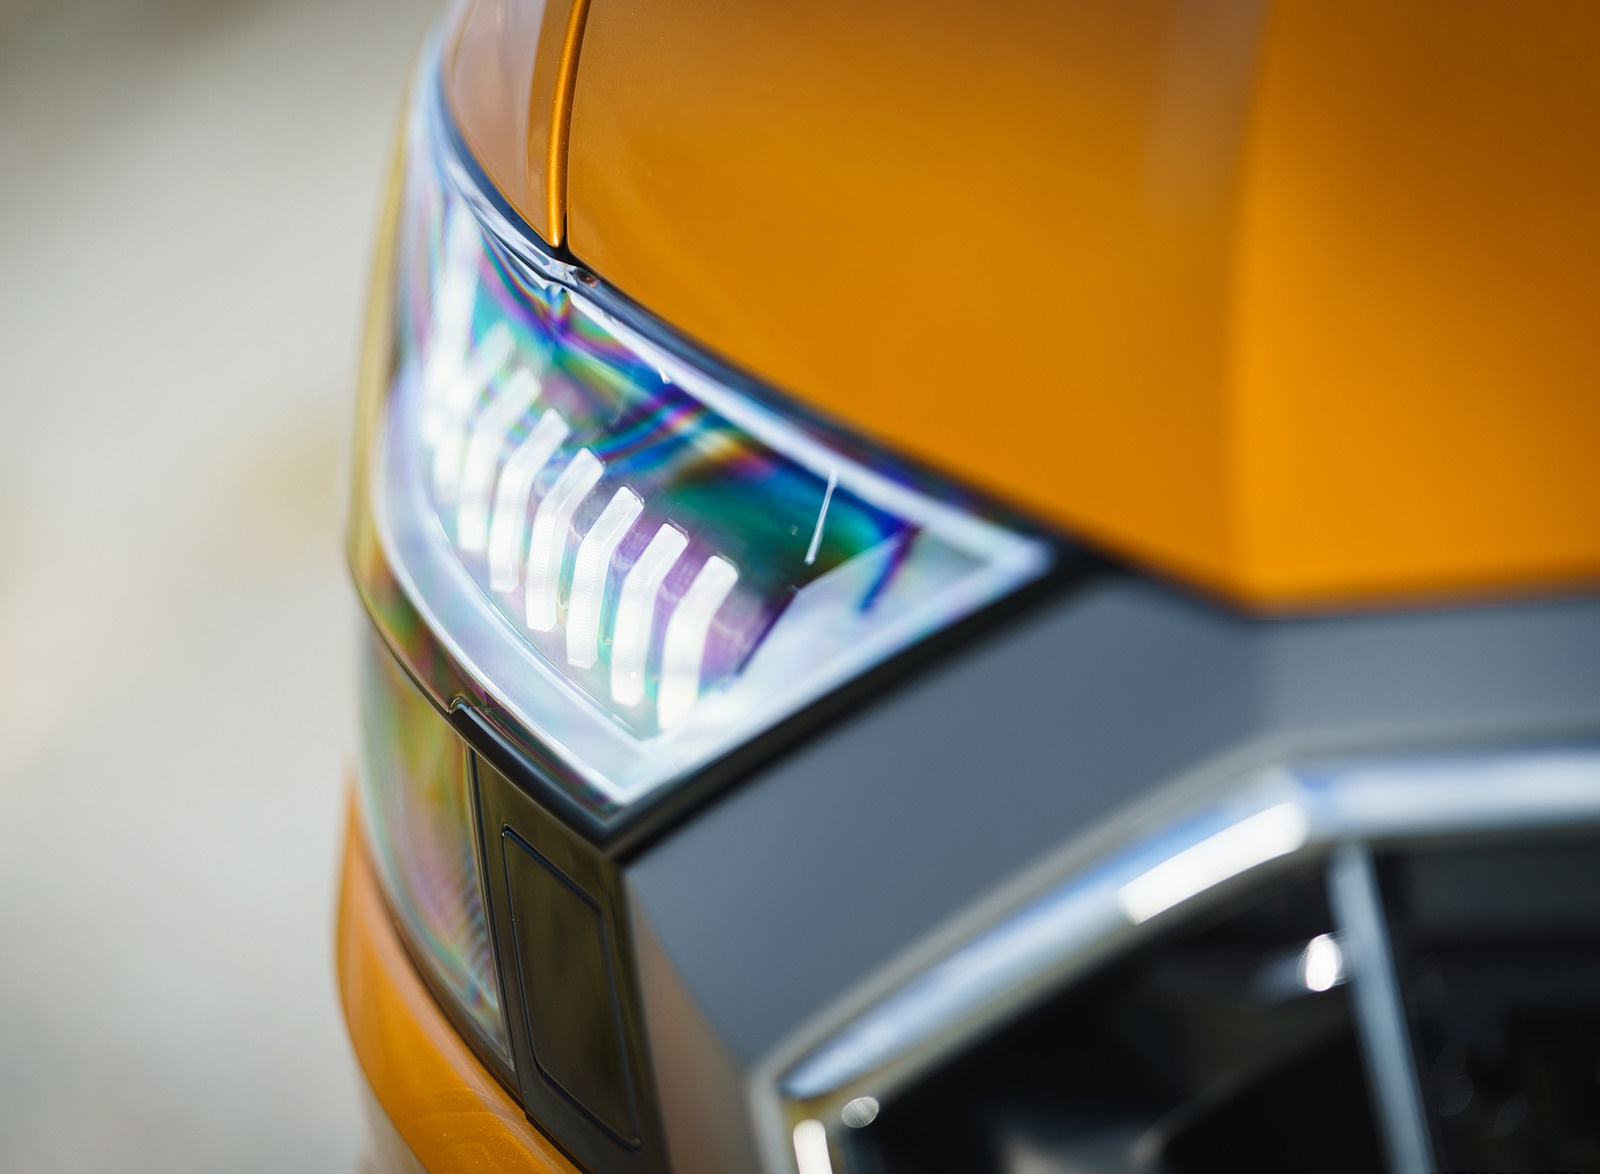 2019 Audi Q8 S Line 50 TDI Quattro (UK-Spec) Headlight Wallpapers #71 of 98